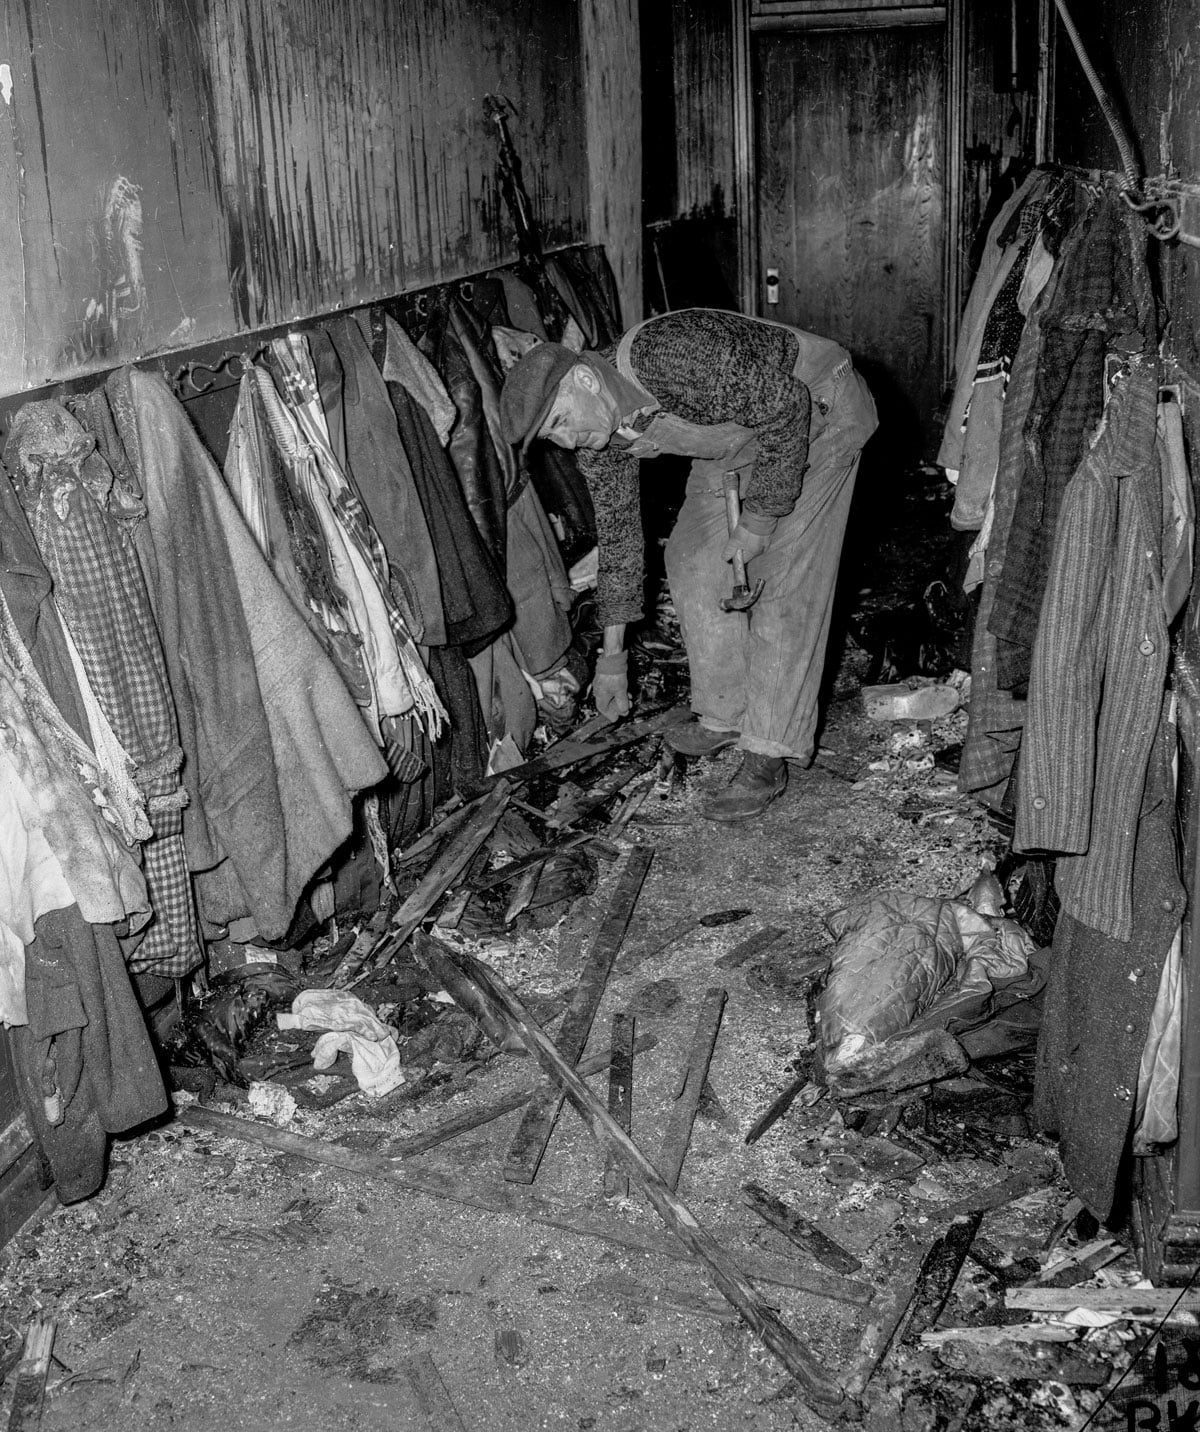 Abandoned children’s coats among the damage